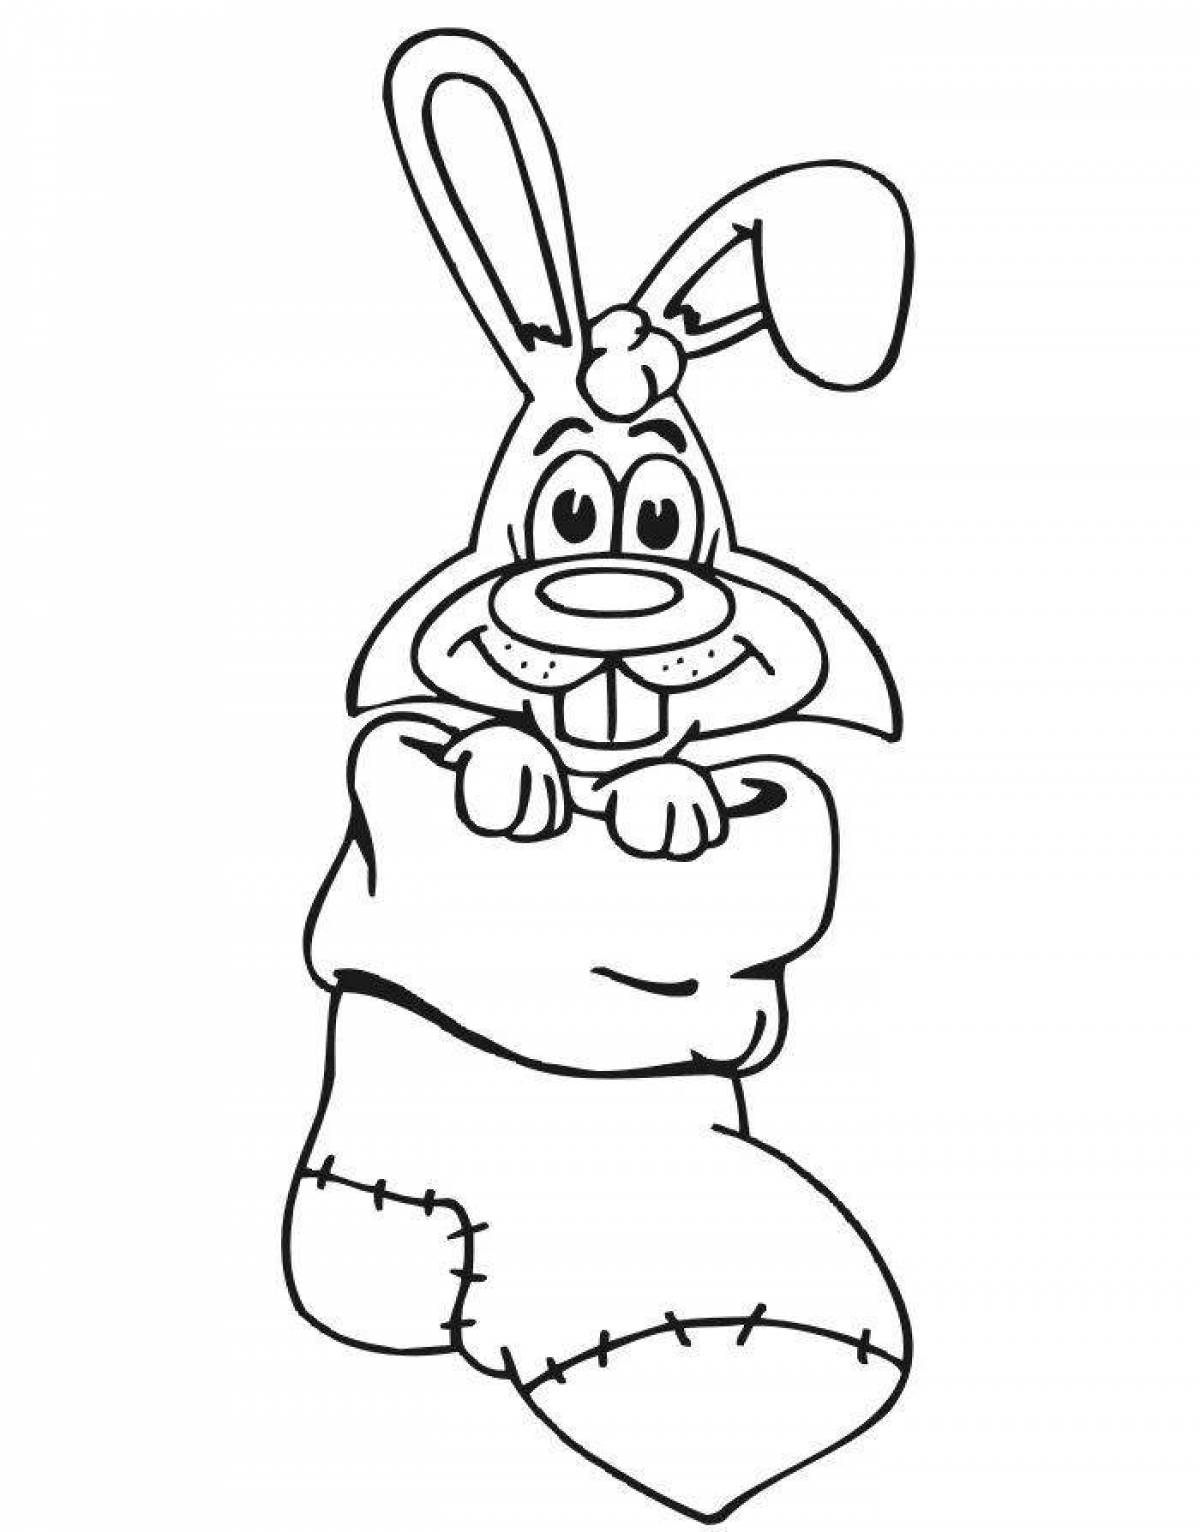 Adorable Christmas Bunny Drawing